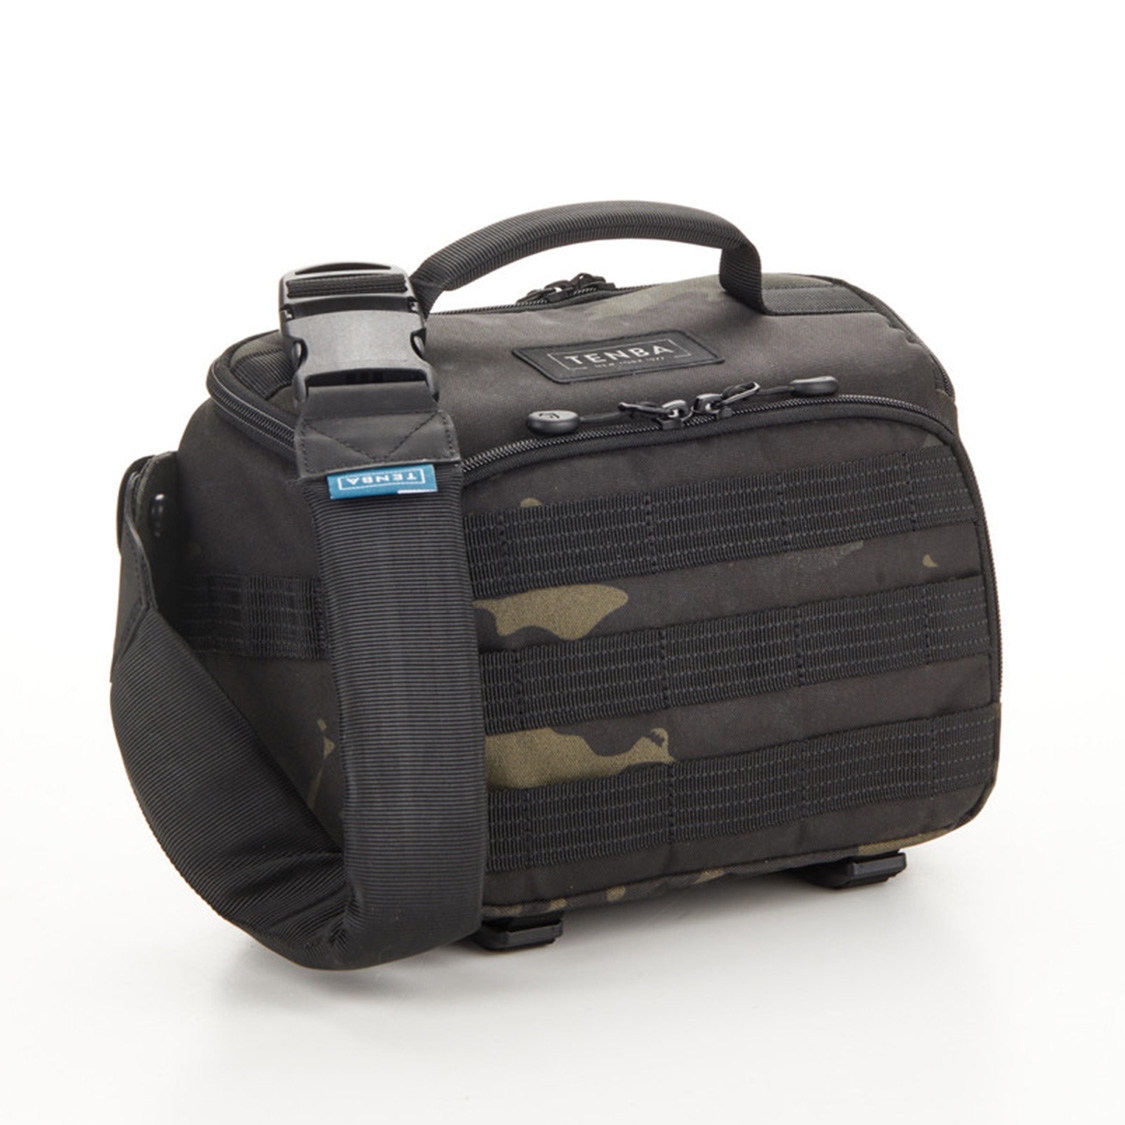 Tenba Axis V2 4L Sling Camera Bag (Multicam Black)